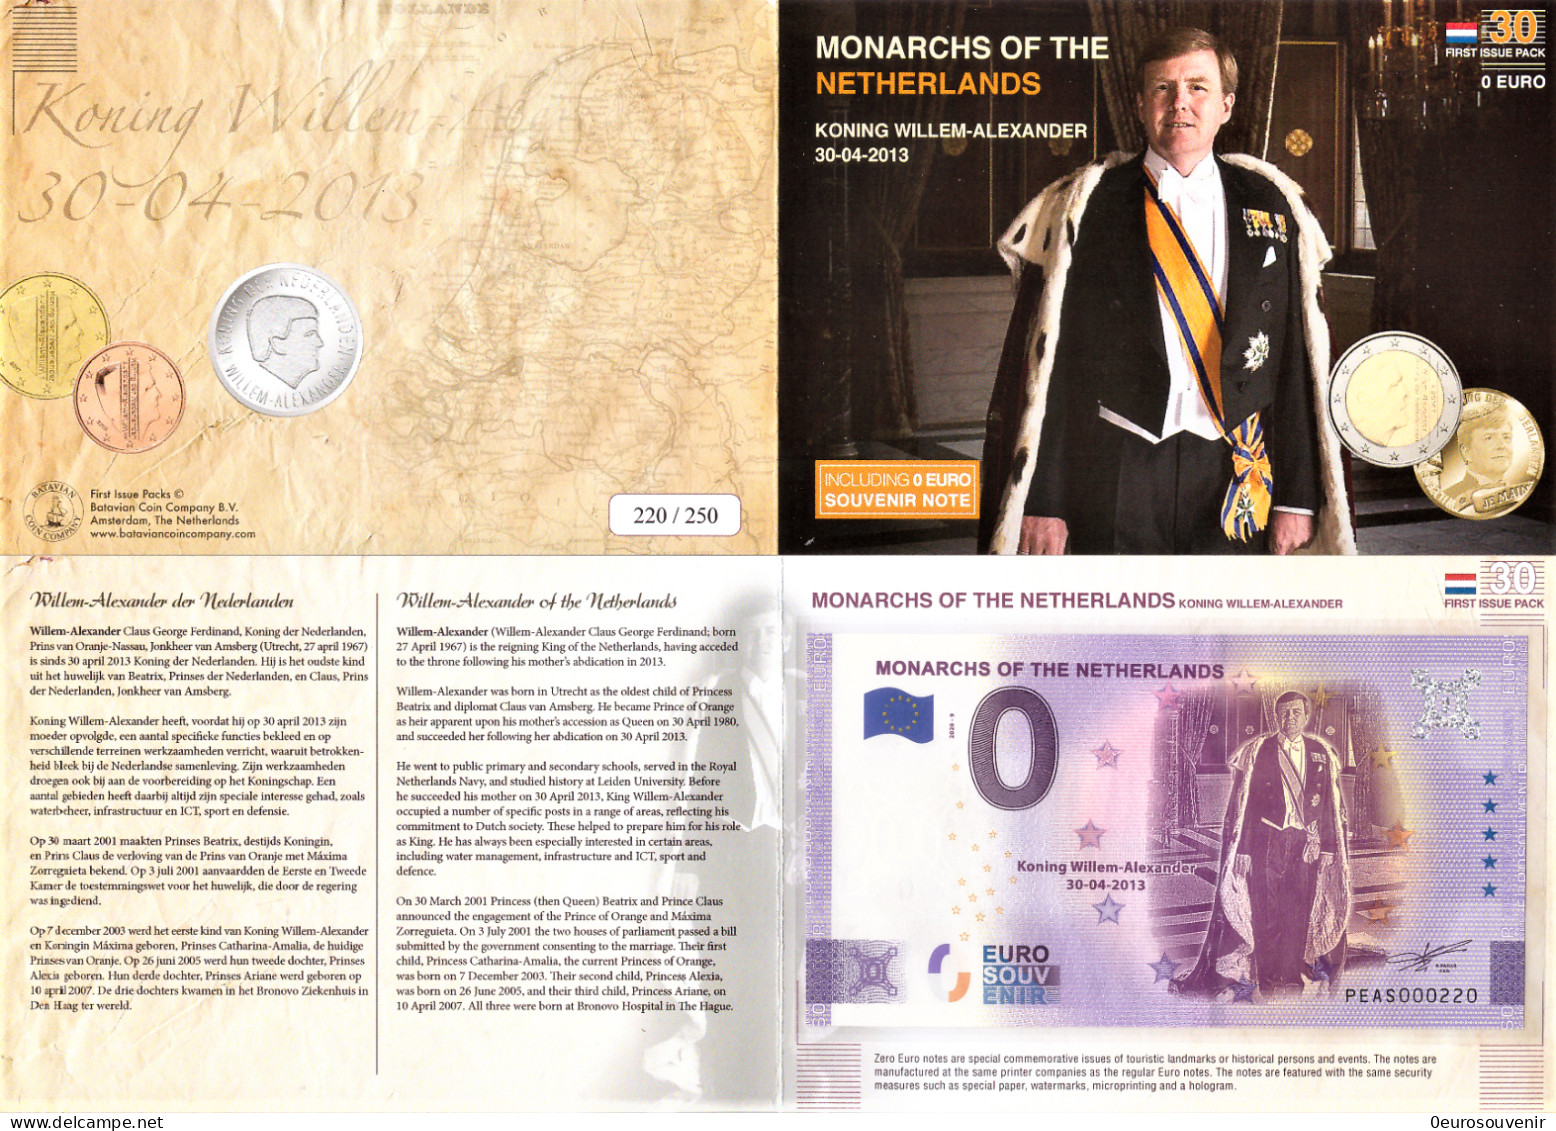 0-Euro PEAS 2020-9 MONARCHS OF THE NETHERLANDS WILLEM-ALEXANDER 30-04-2013 First Issue Pack No. Nur Bis #250 ! - Privatentwürfe